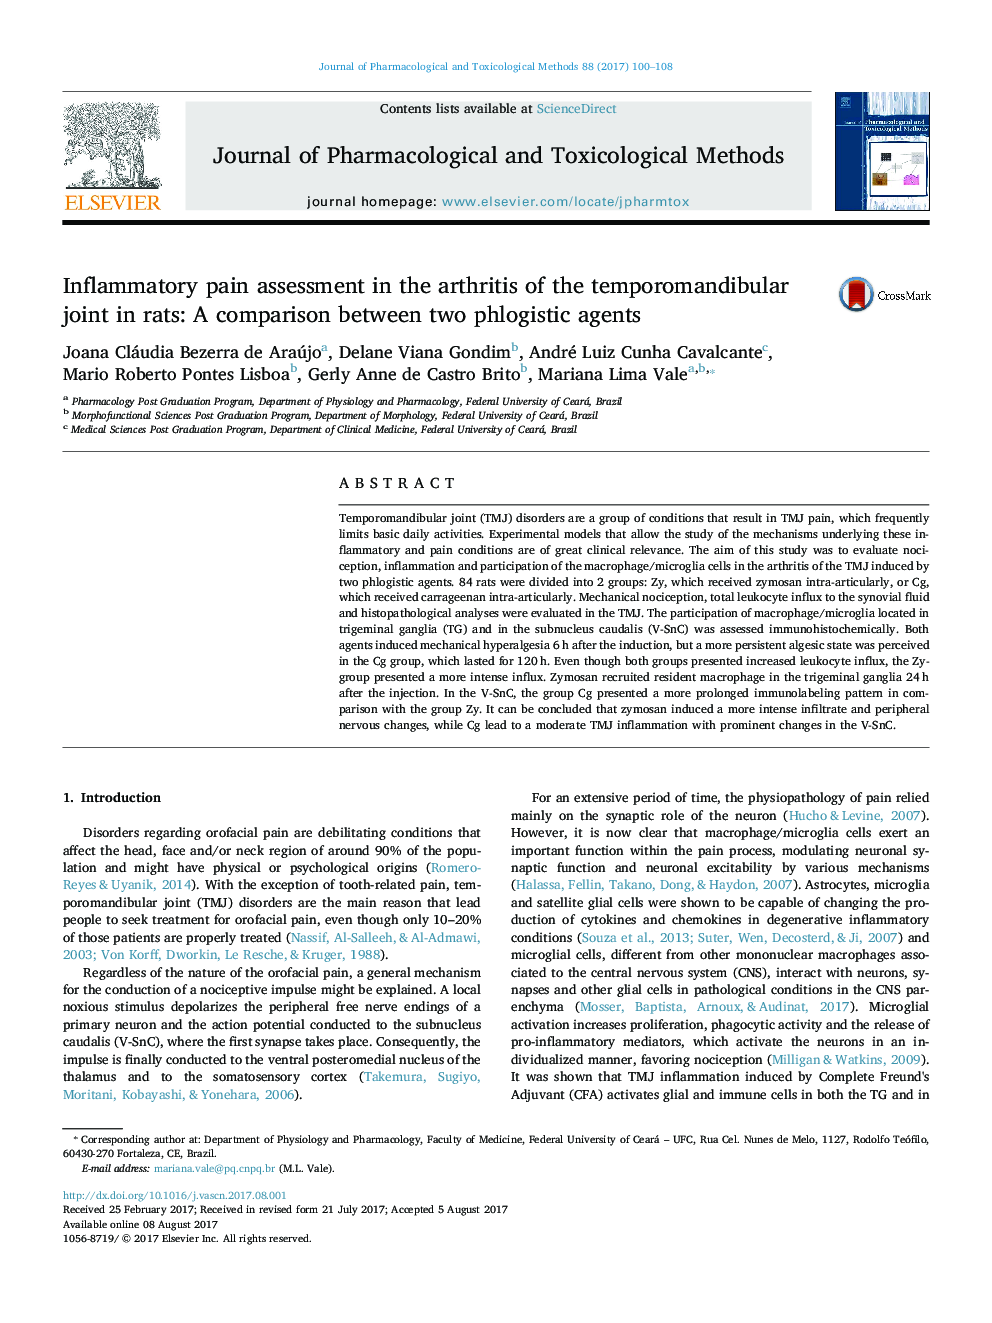 ارزیابی درد التهابی در آرتریت مفصل مفصلی در موش صحرایی: مقایسه بین دو عامل فلوژیستیک 